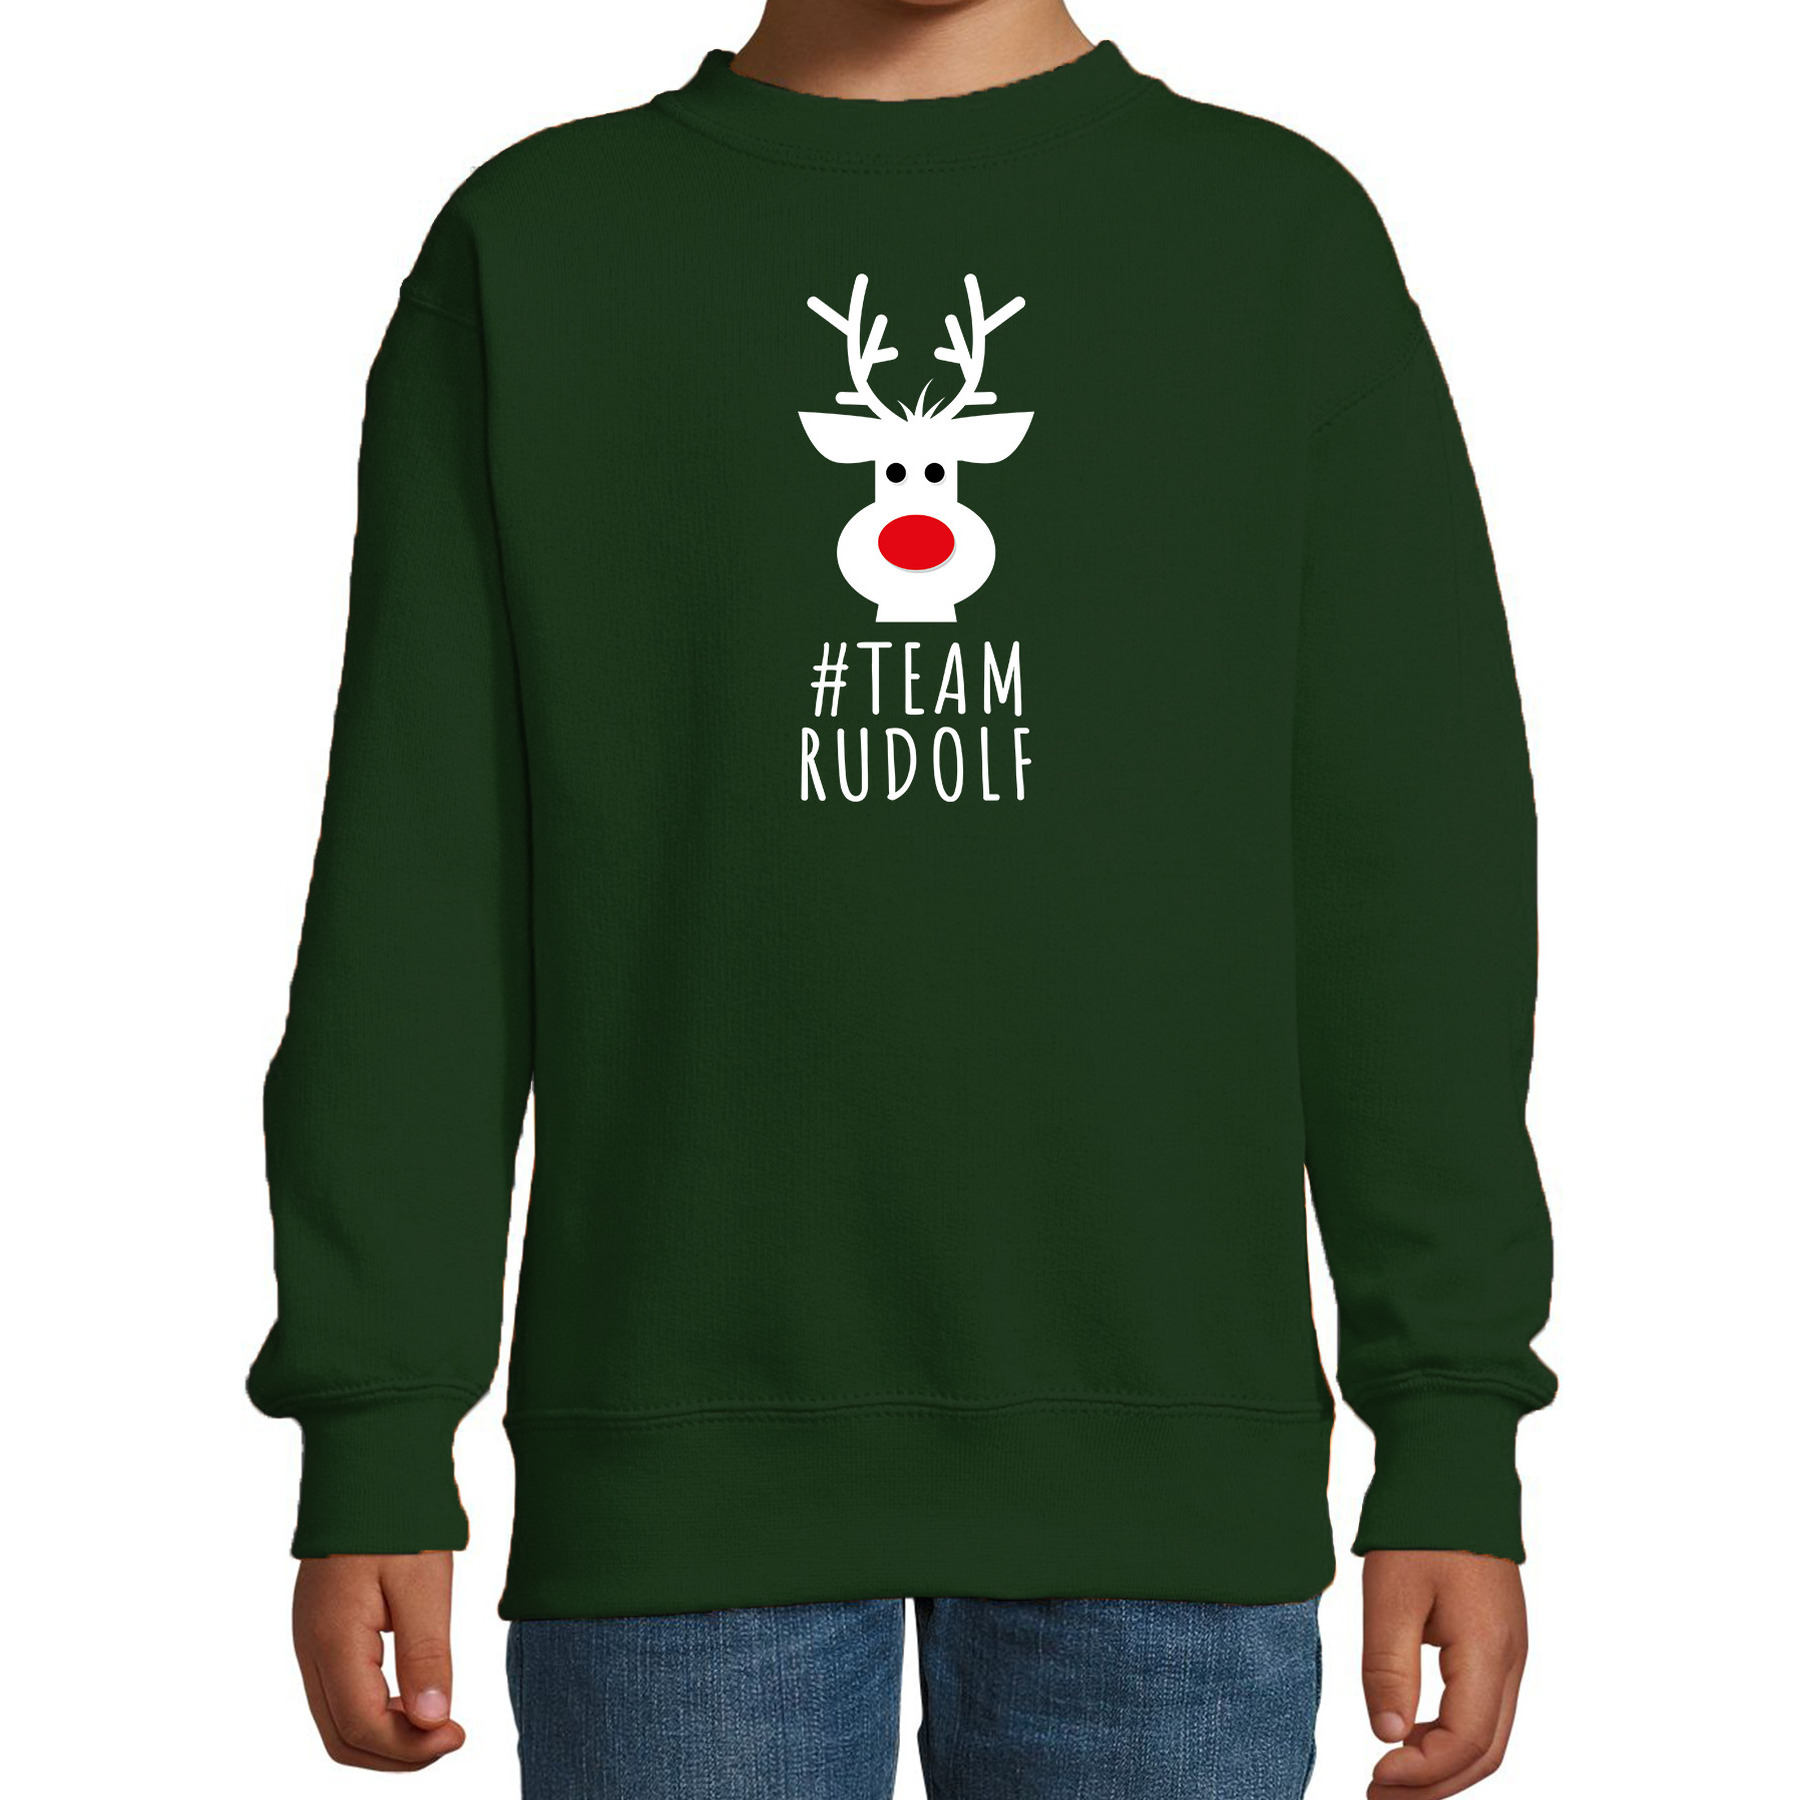 Kersttrui-sweater voor kinderen team Rudolf groen